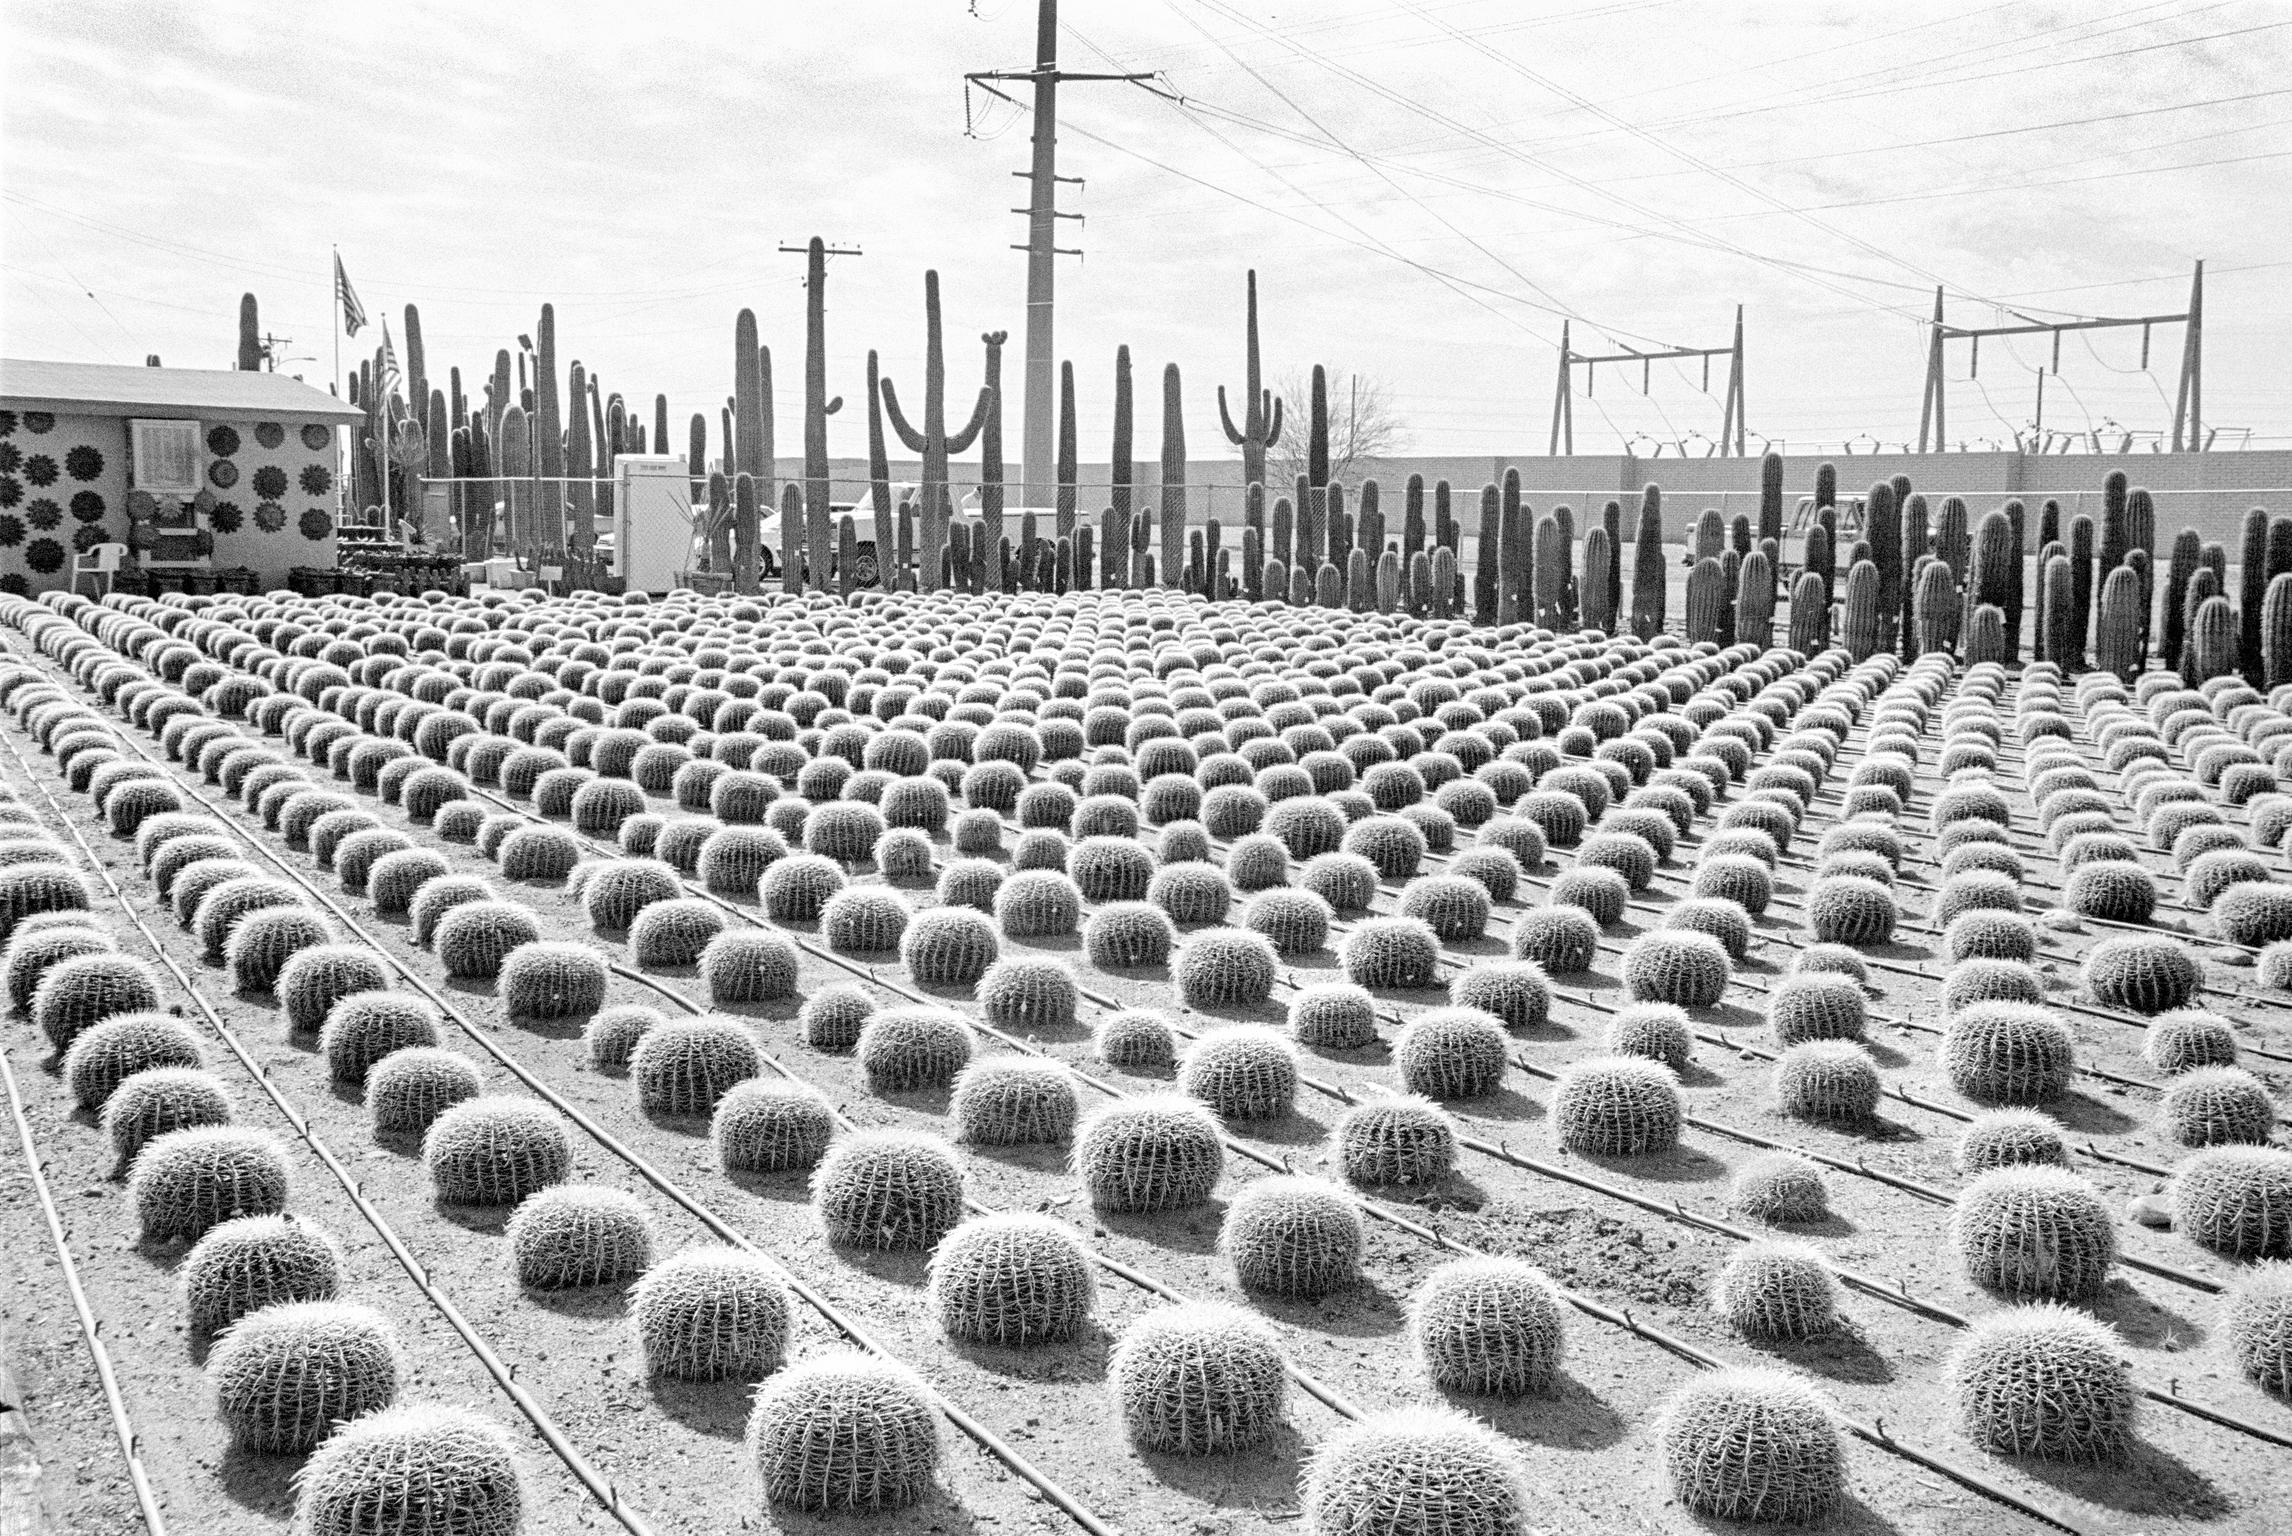 Cactus nursery. Arizona USA